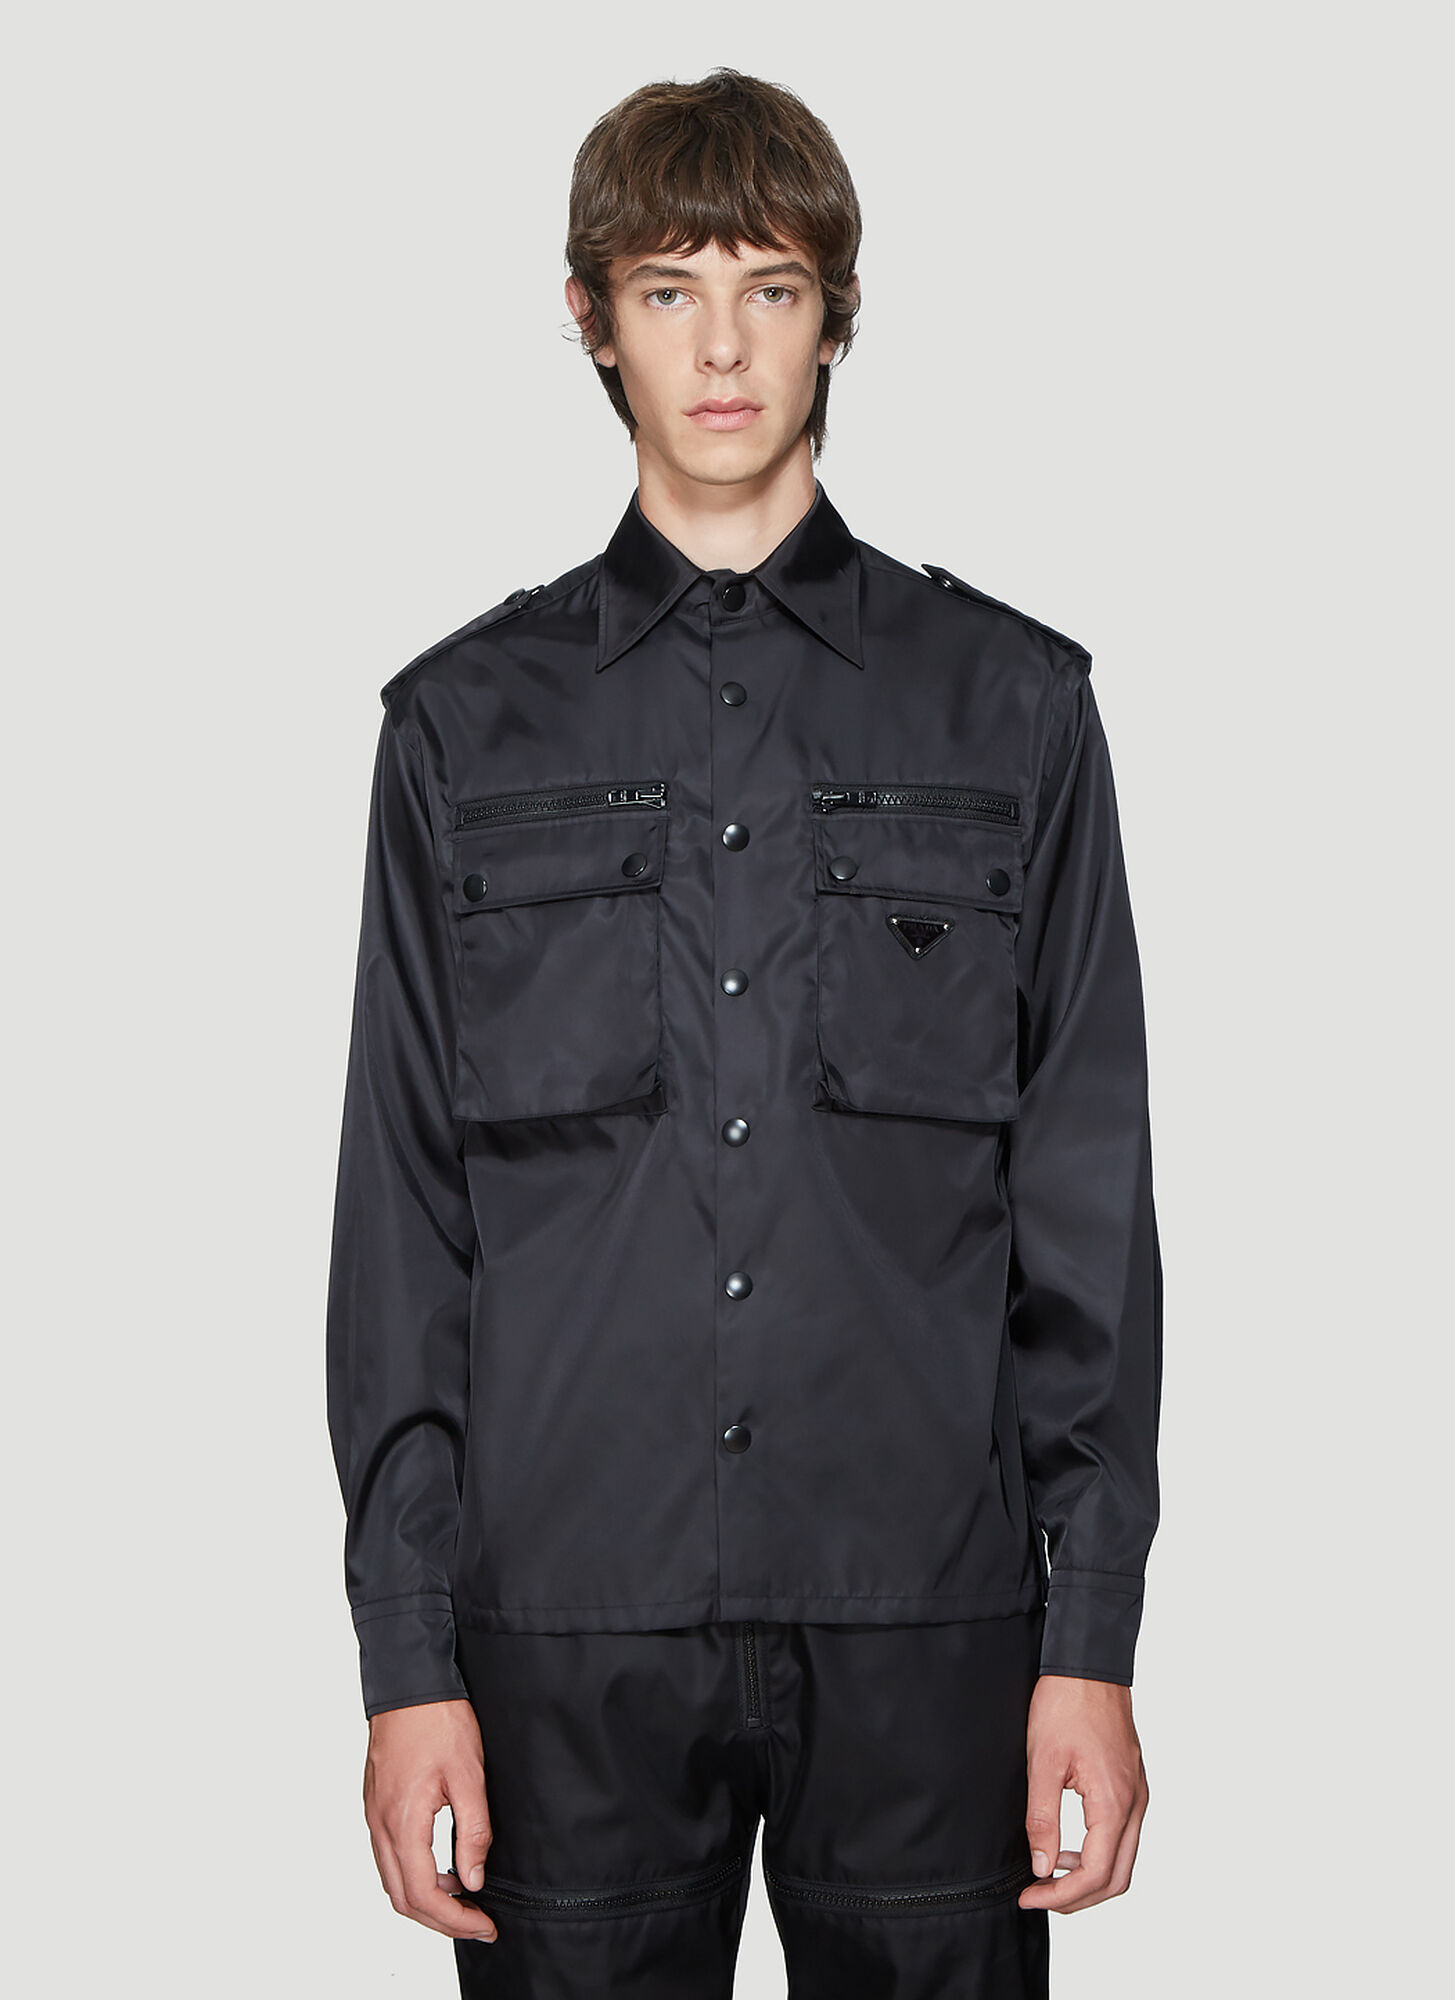 Prada Nylon Patch Pocket Shirt in Black size S | The Fashionisto